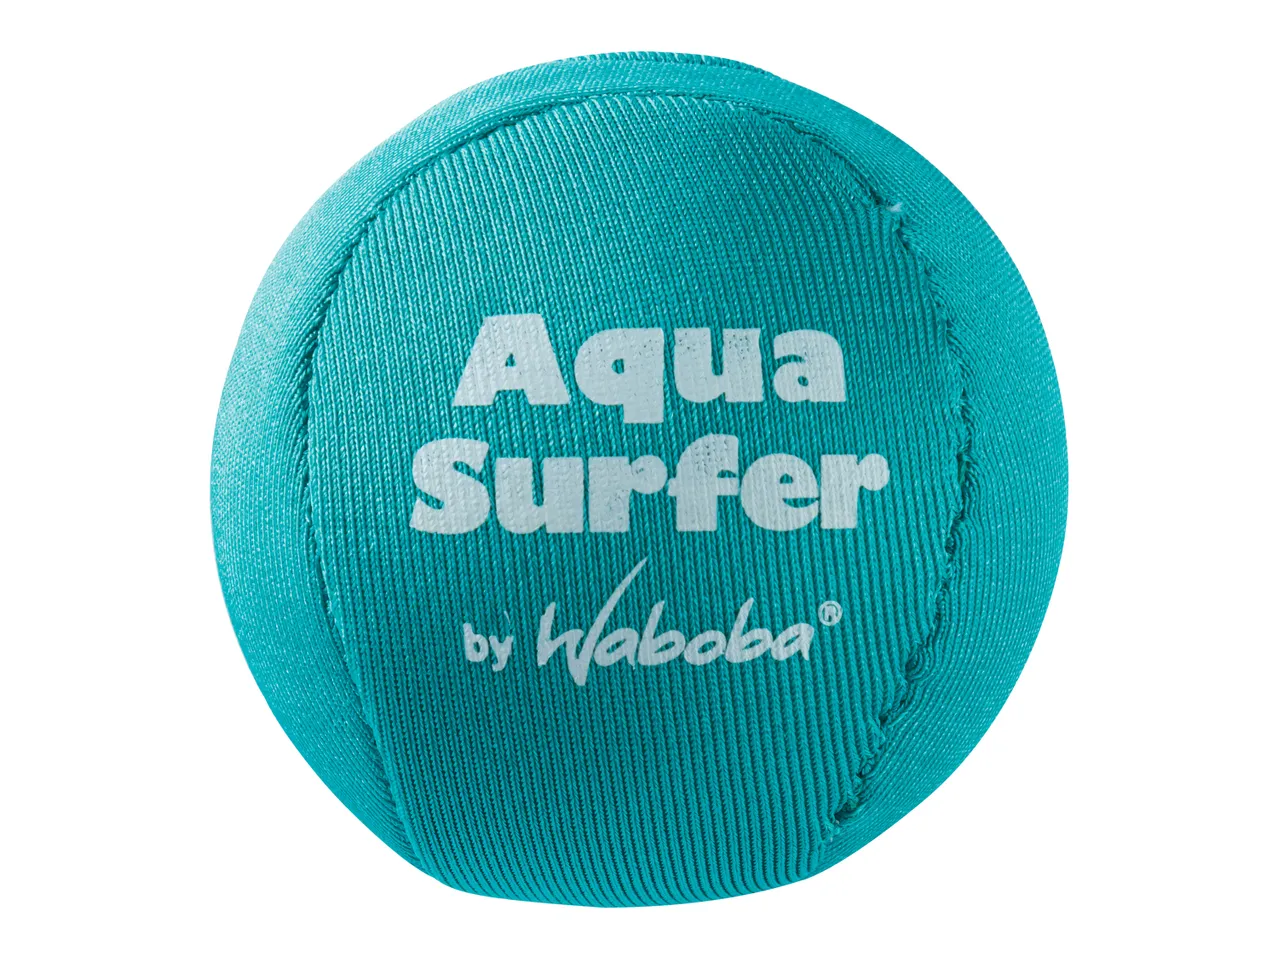 Palla acquatica o frisbee , prezzo 6,99 EUR 
Palla acquatica o frisbee 
- Palla ...